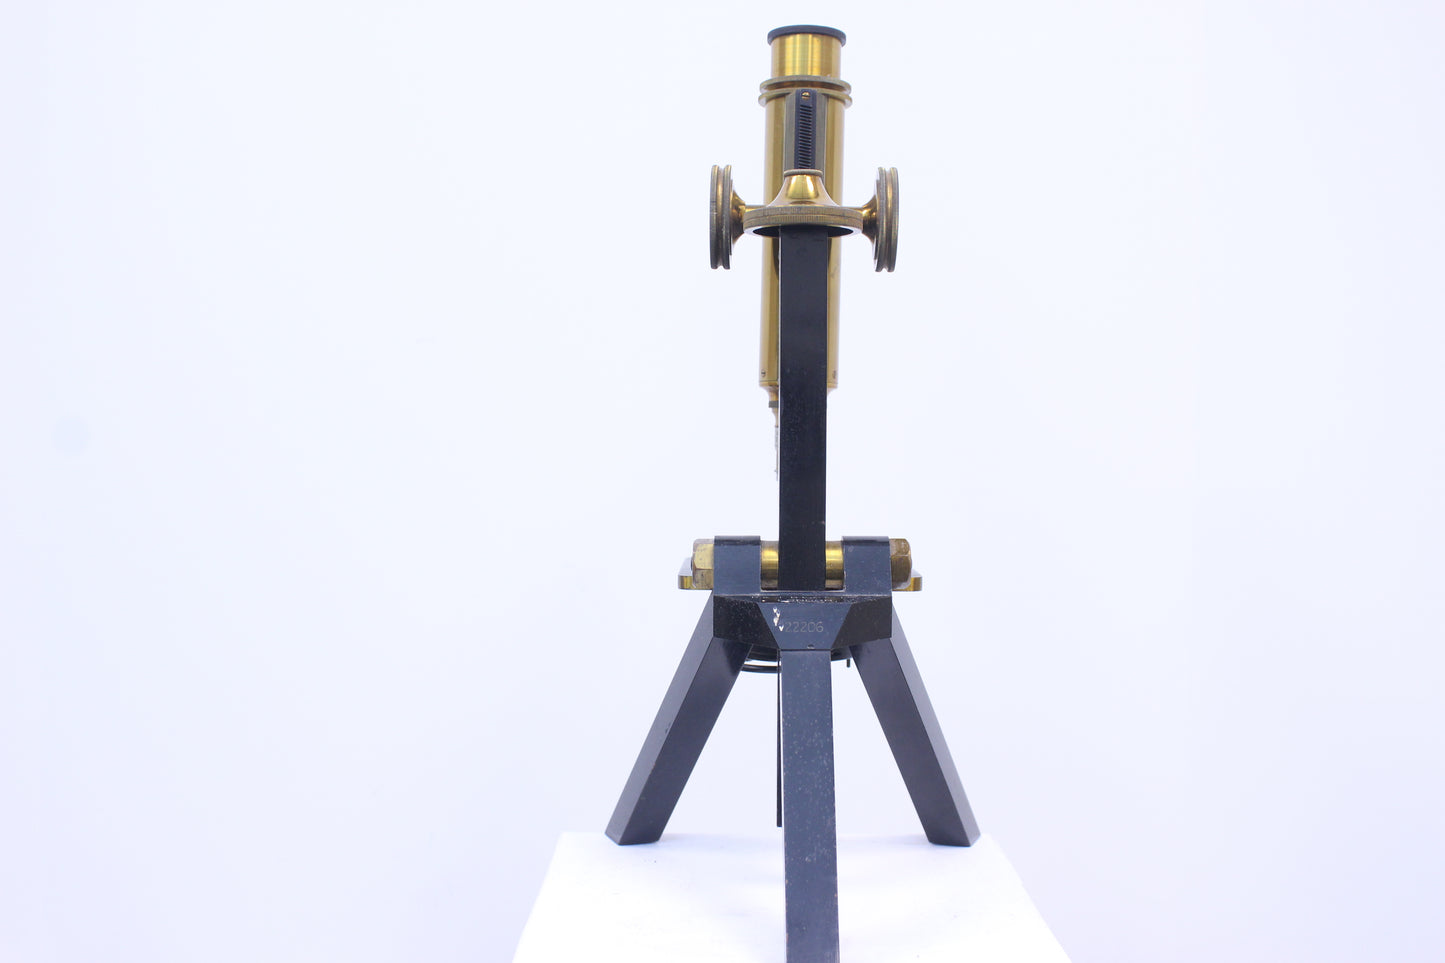 Microscopio de latón antiguo R &amp; J. Beck (22206)